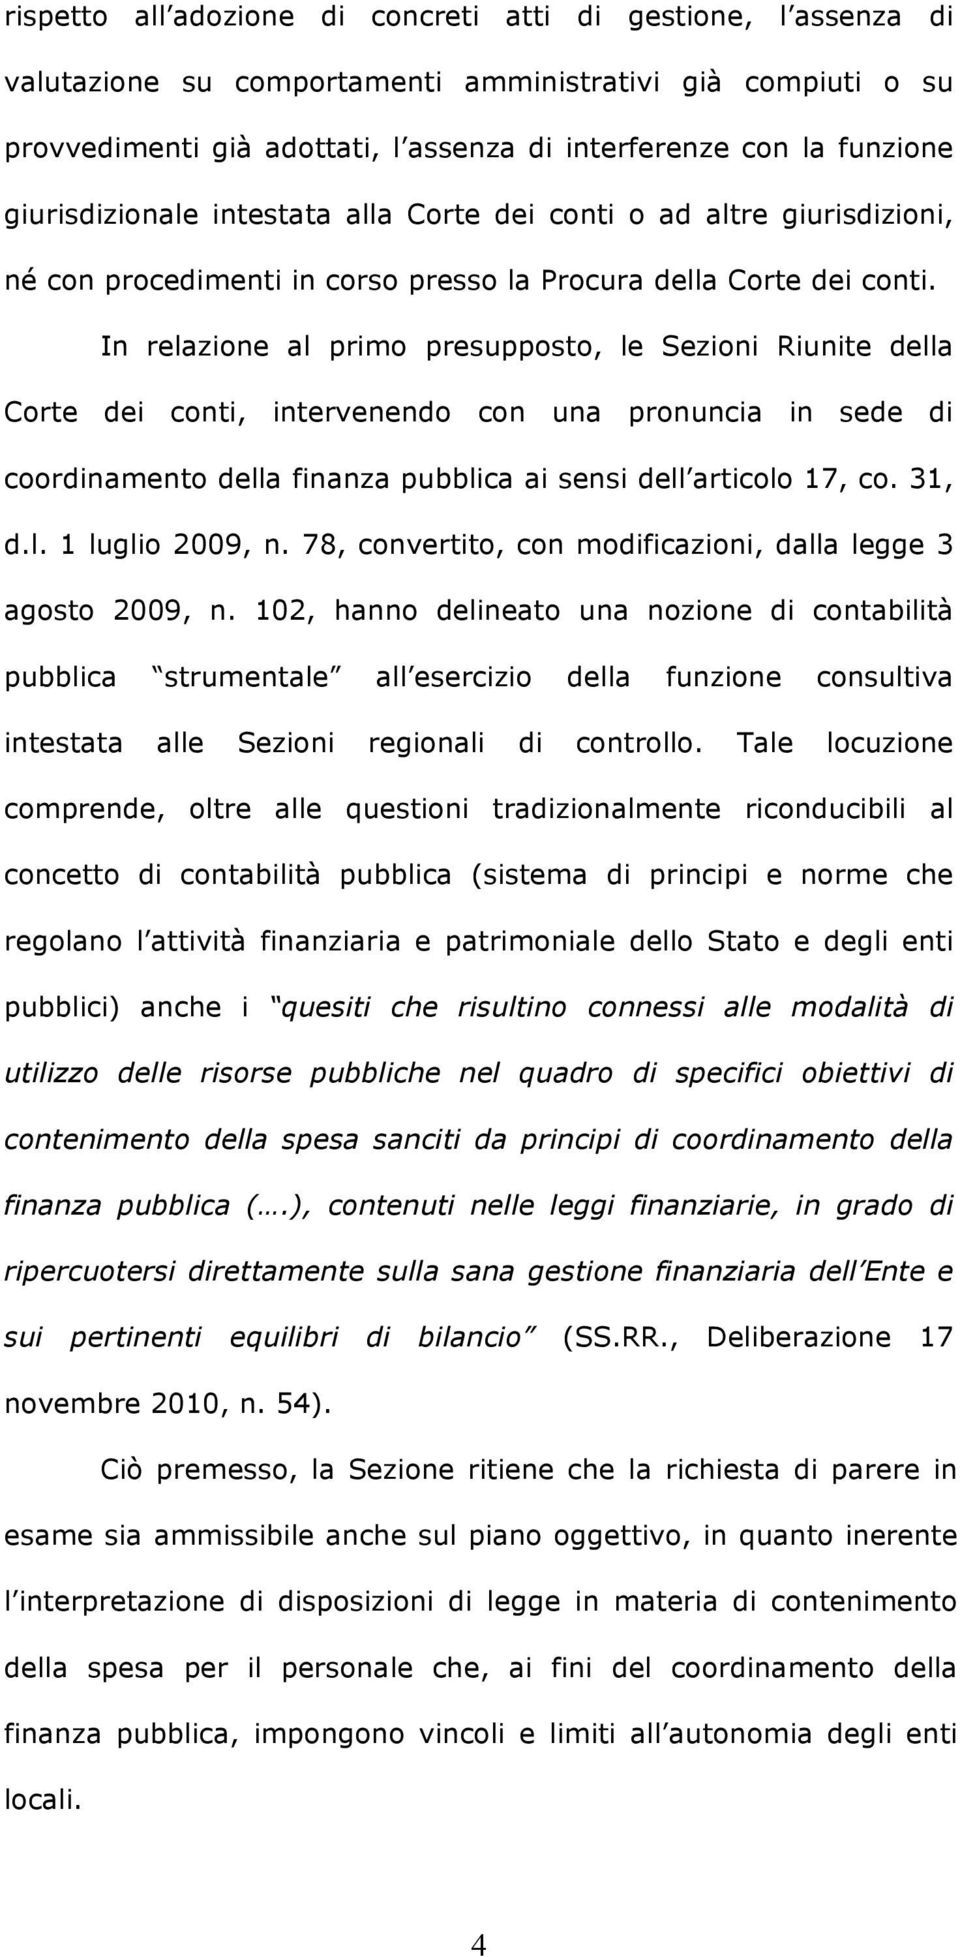 In relazione al primo presupposto, le Sezioni Riunite della Corte dei conti, intervenendo con una pronuncia in sede di coordinamento della finanza pubblica ai sensi dell articolo 17, co. 31, d.l. 1 luglio 2009, n.